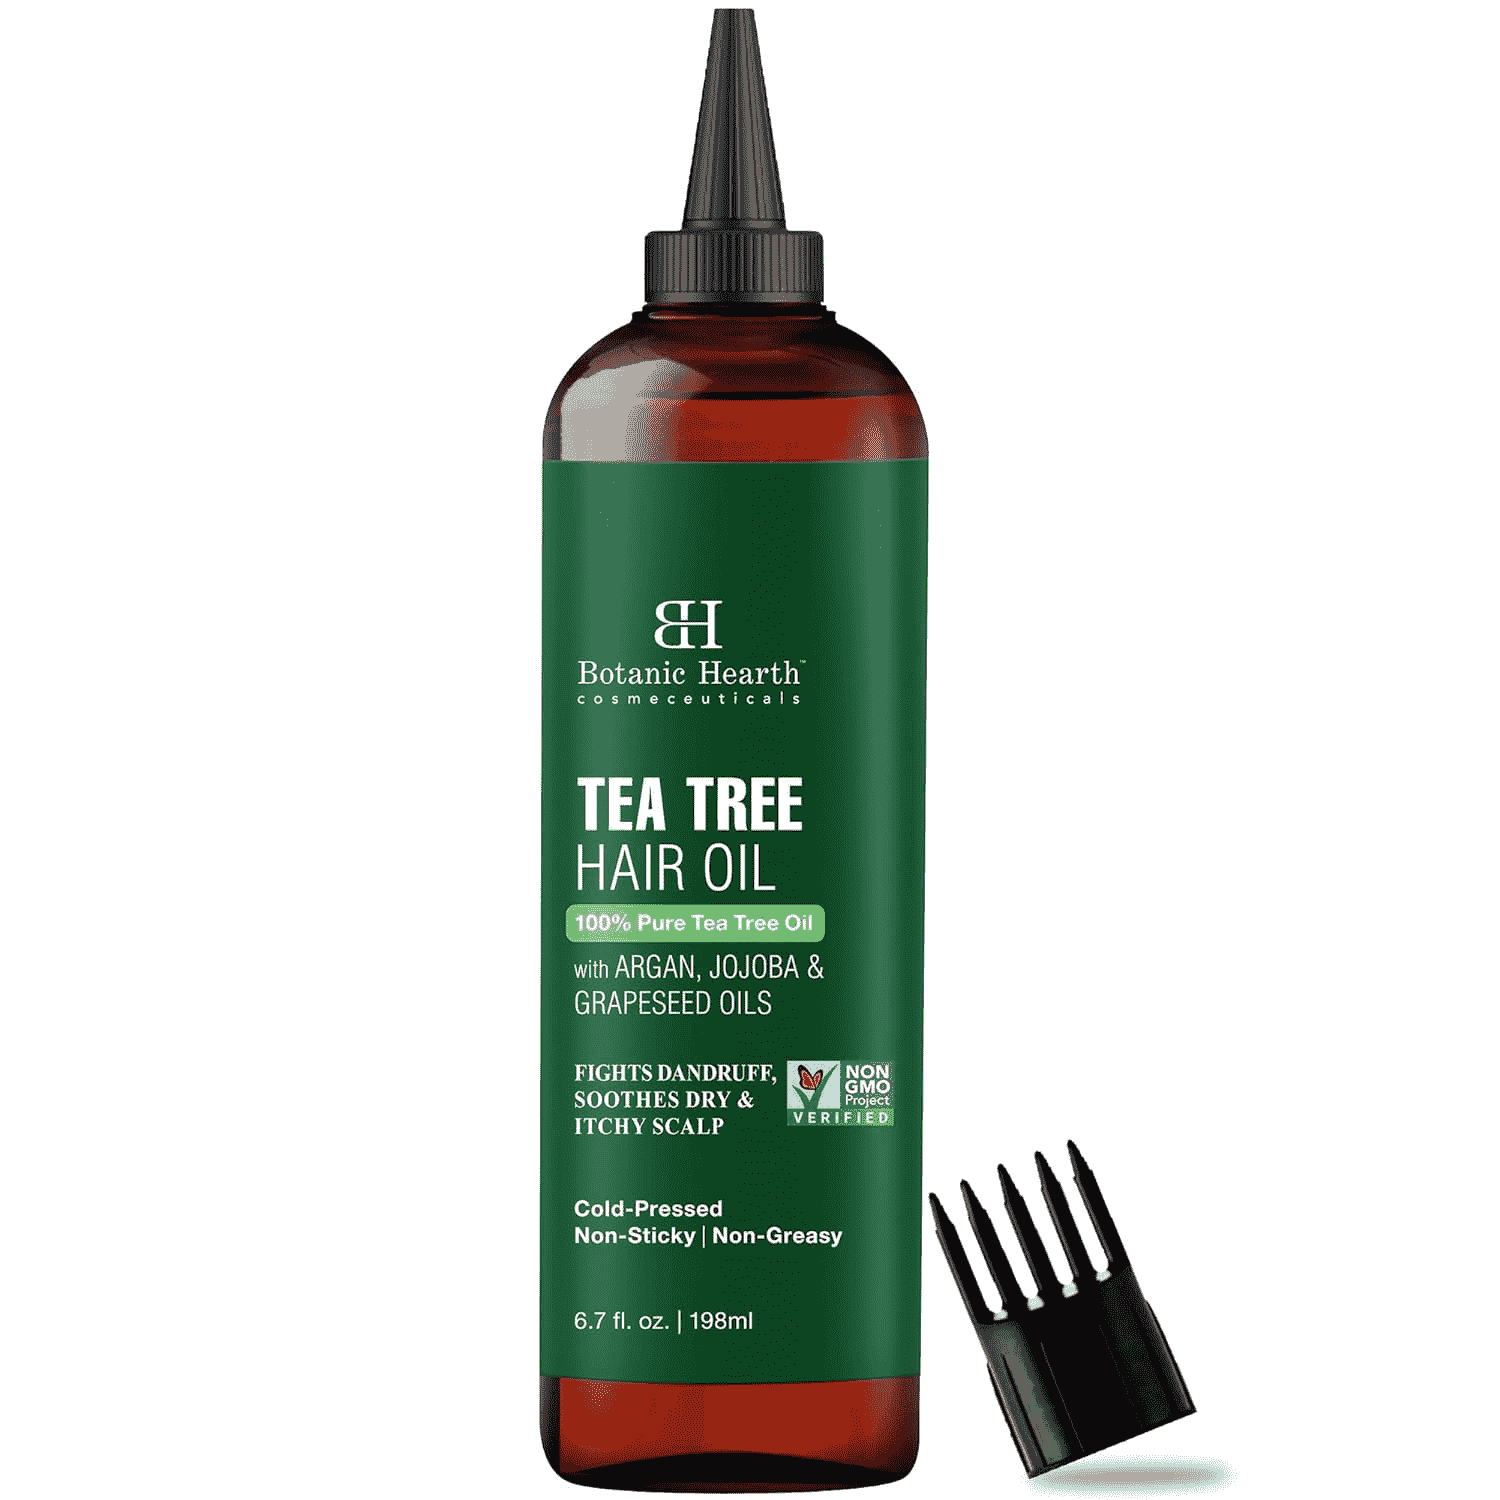 Tea tree hair oil